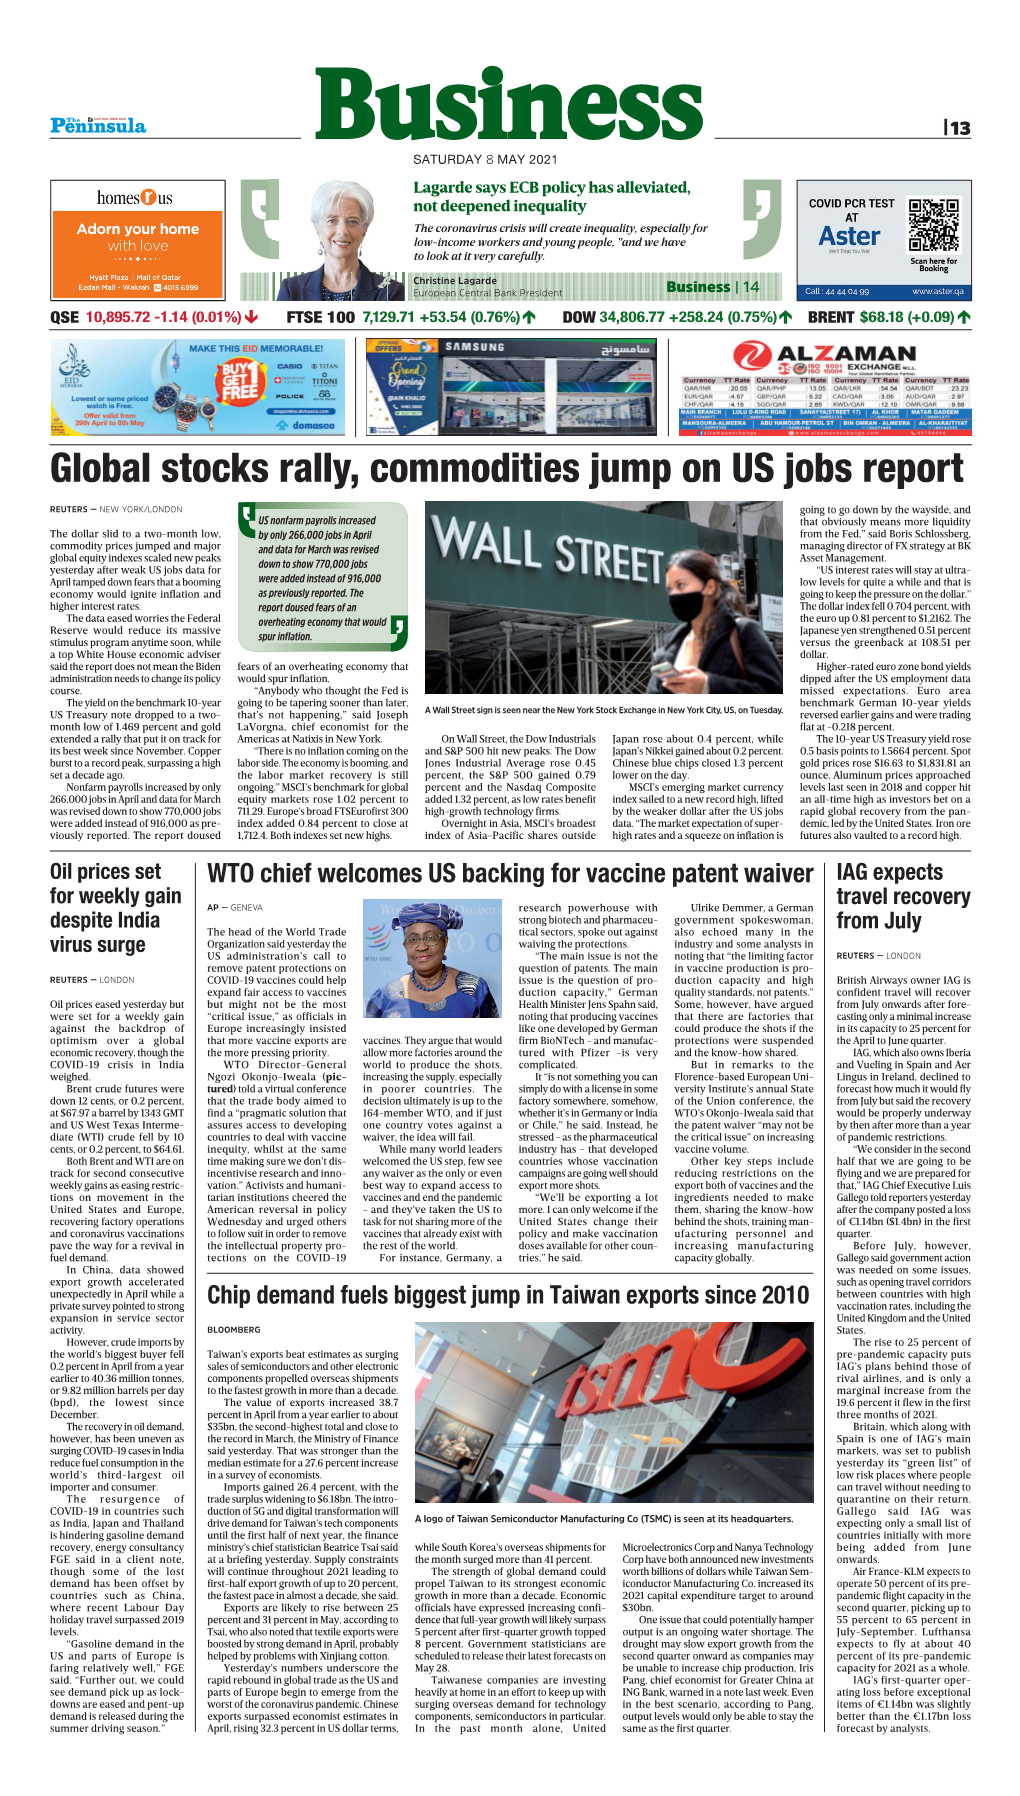 Global Stocks Rally, Commodities Jump on US Jobs Report